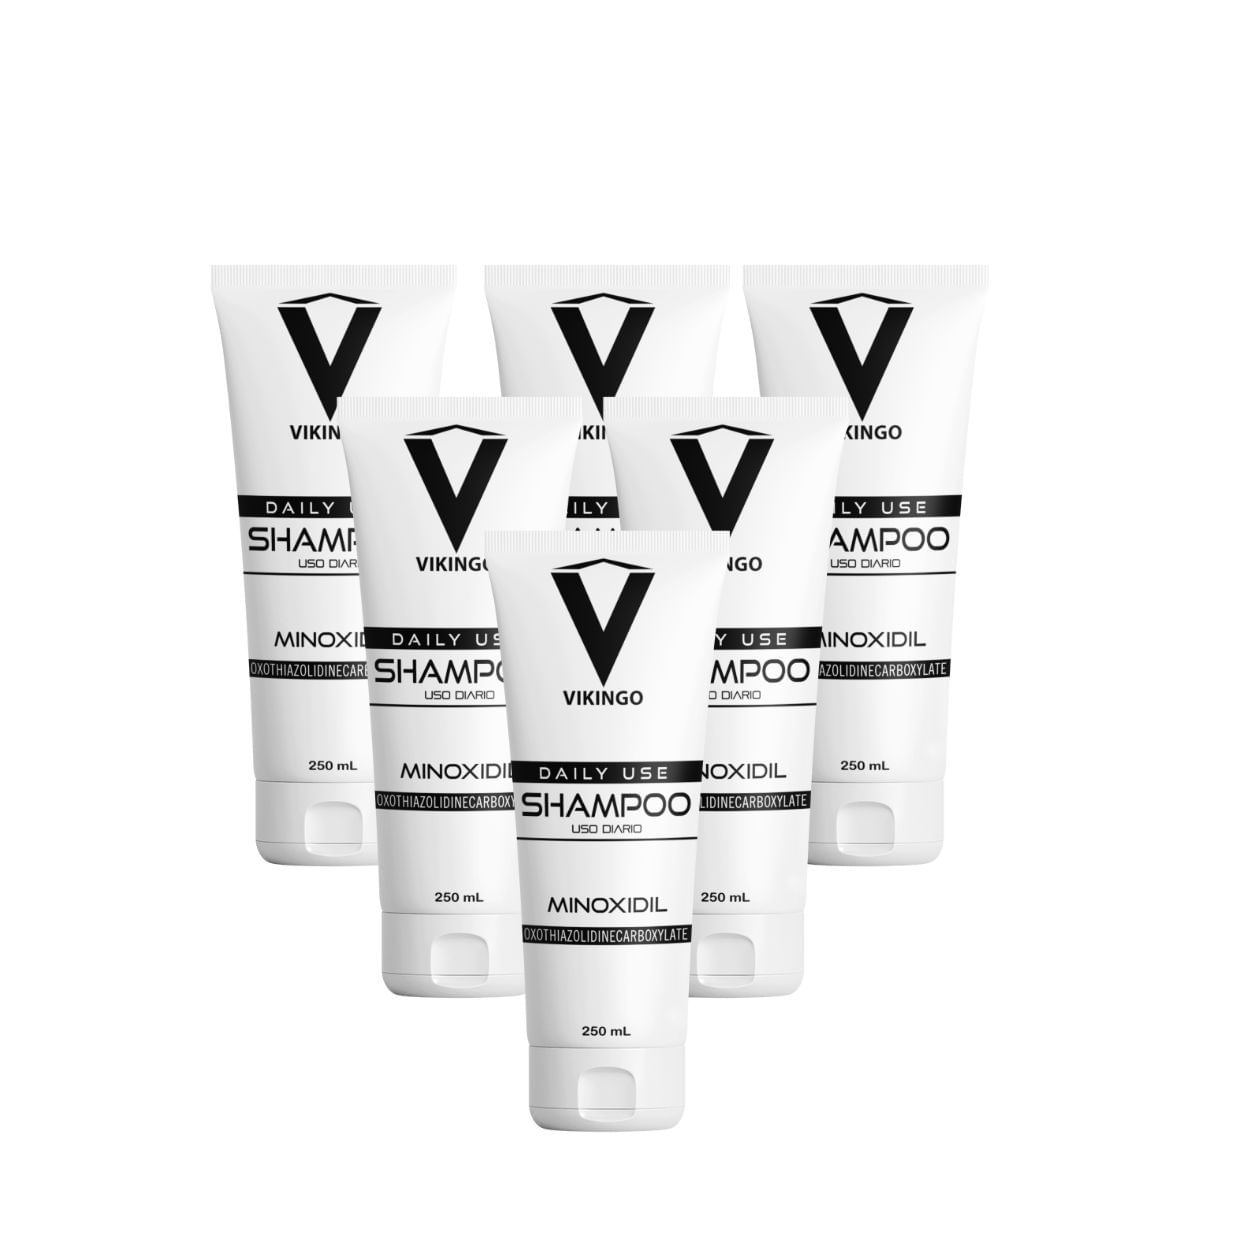 Shampoo Vikingo con Minoxidil de 250 ml x 6 unidades